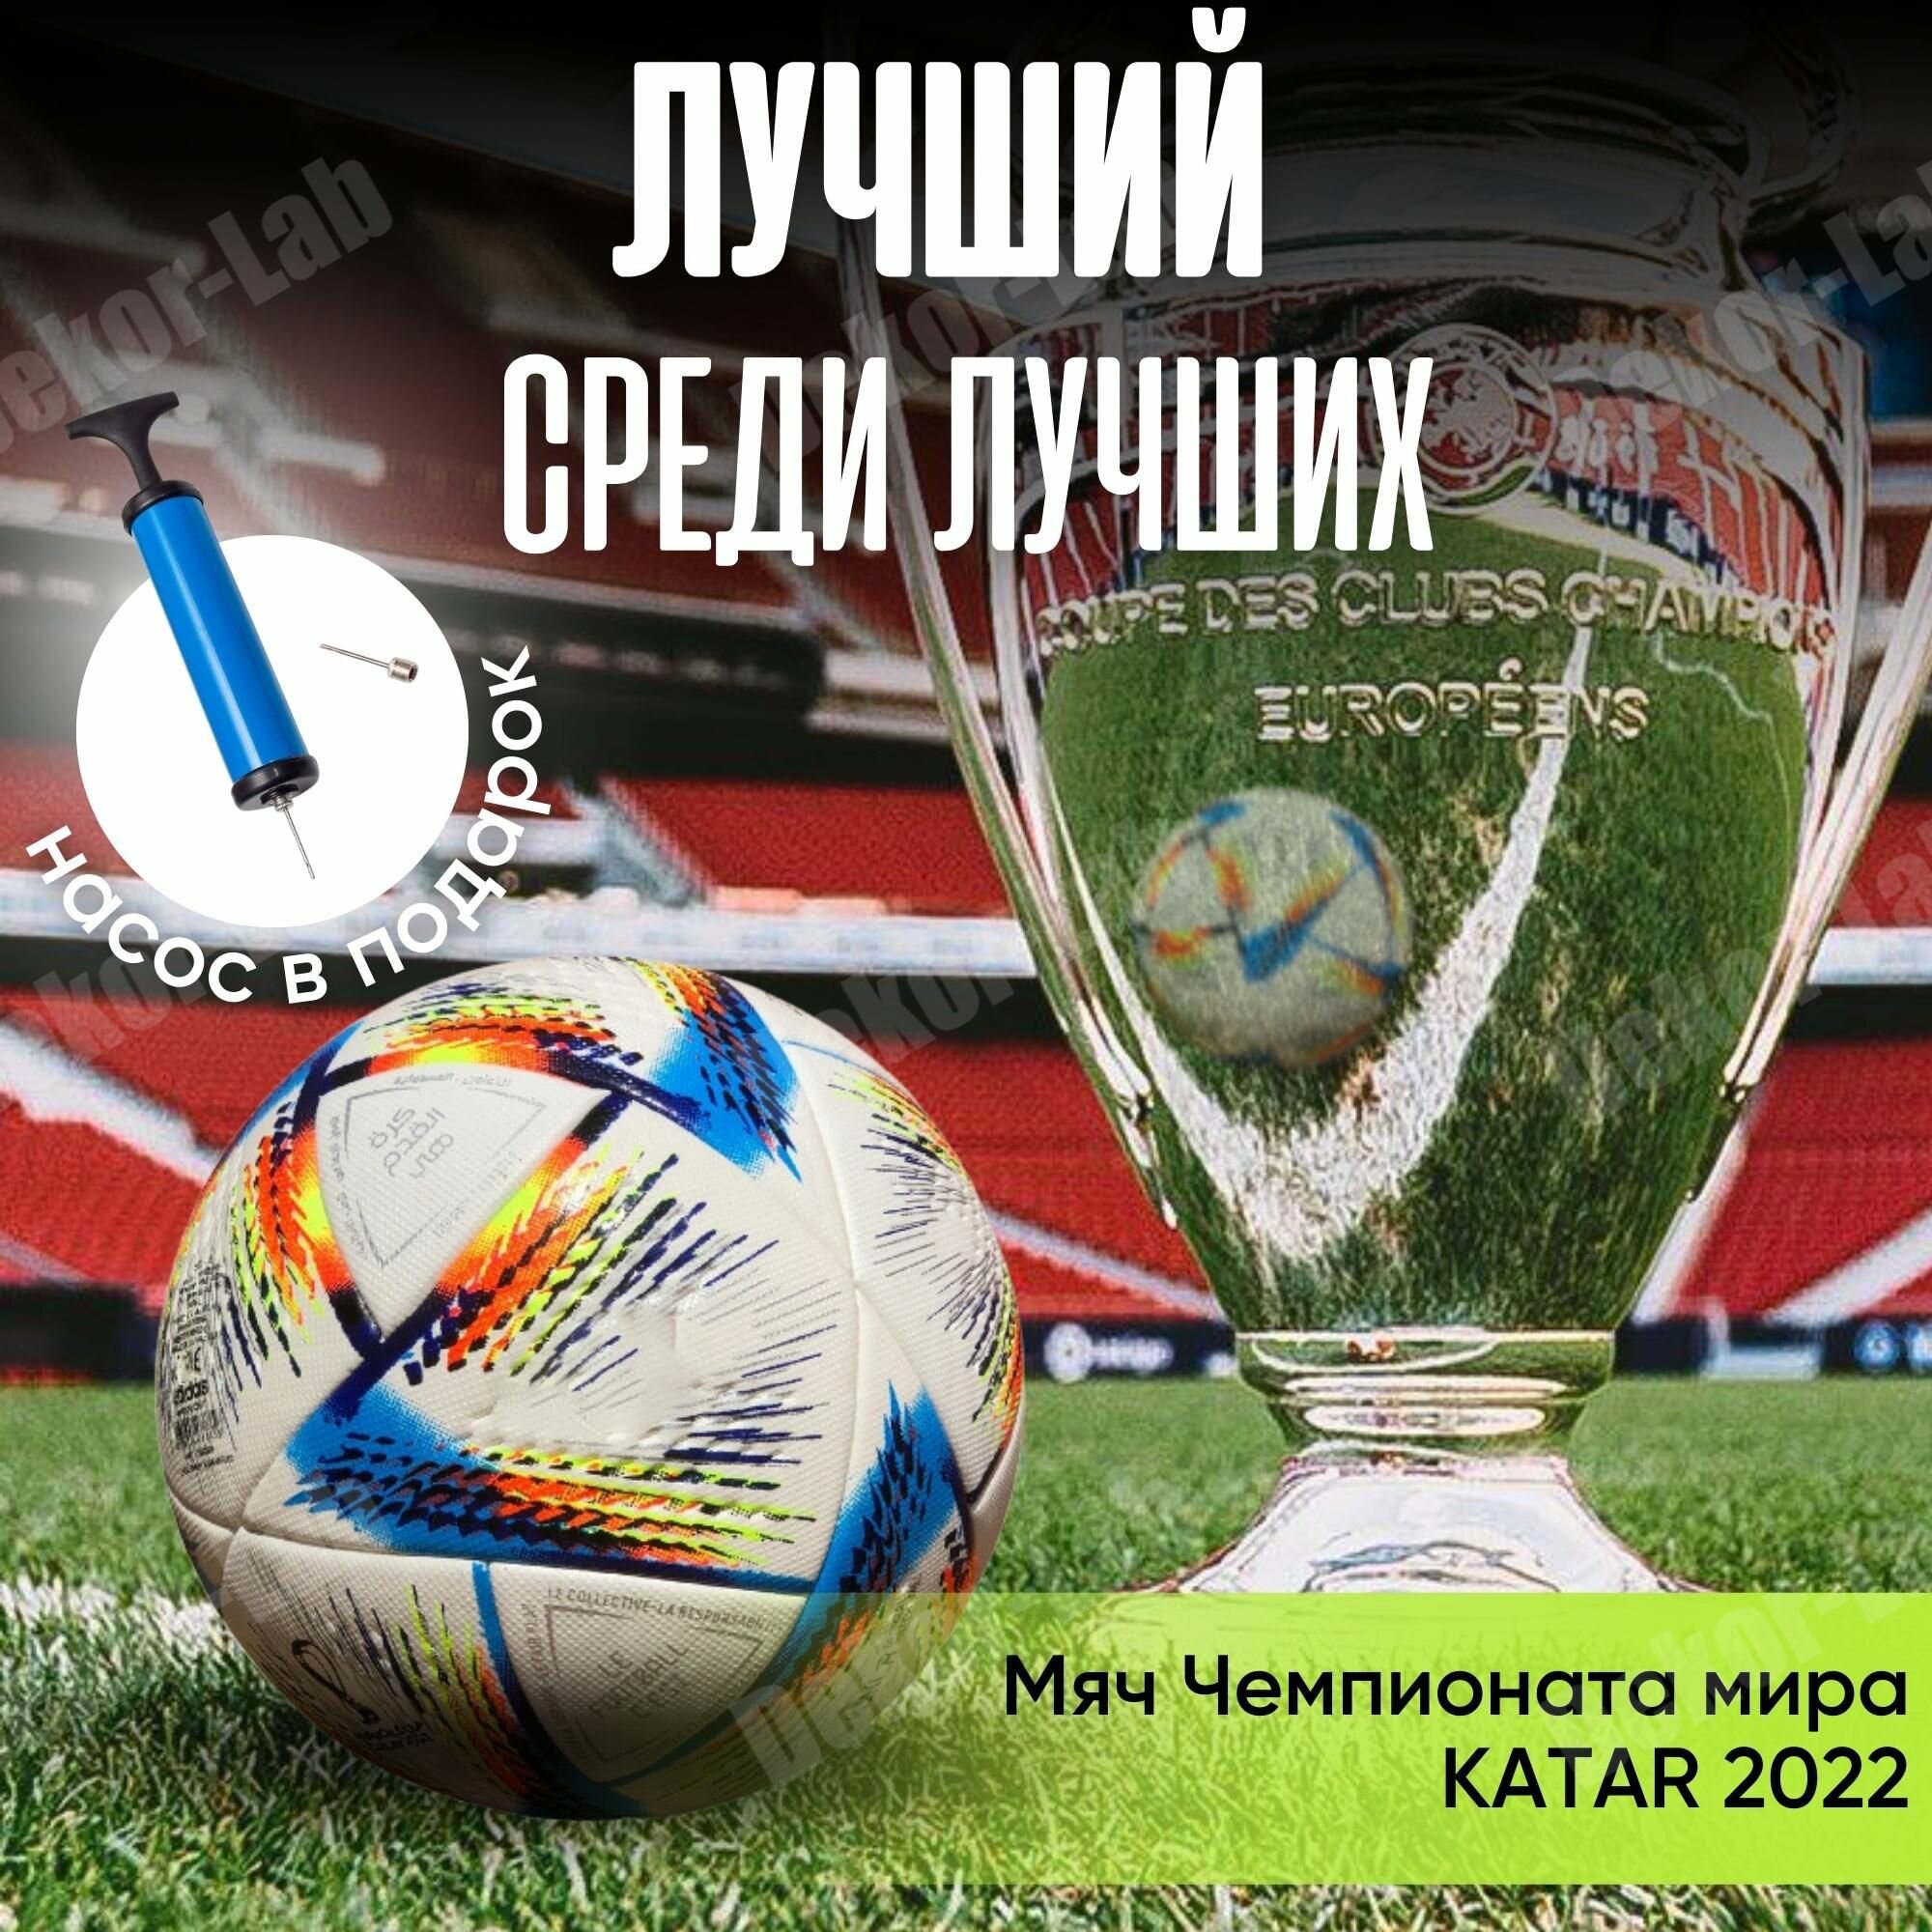 Мяч футбольный Чемпионат Мир KATAR 2022 размер 5 / FIFA / Al Hilm / профессиональный кожаный с насосом, тренировочный / термосклейка